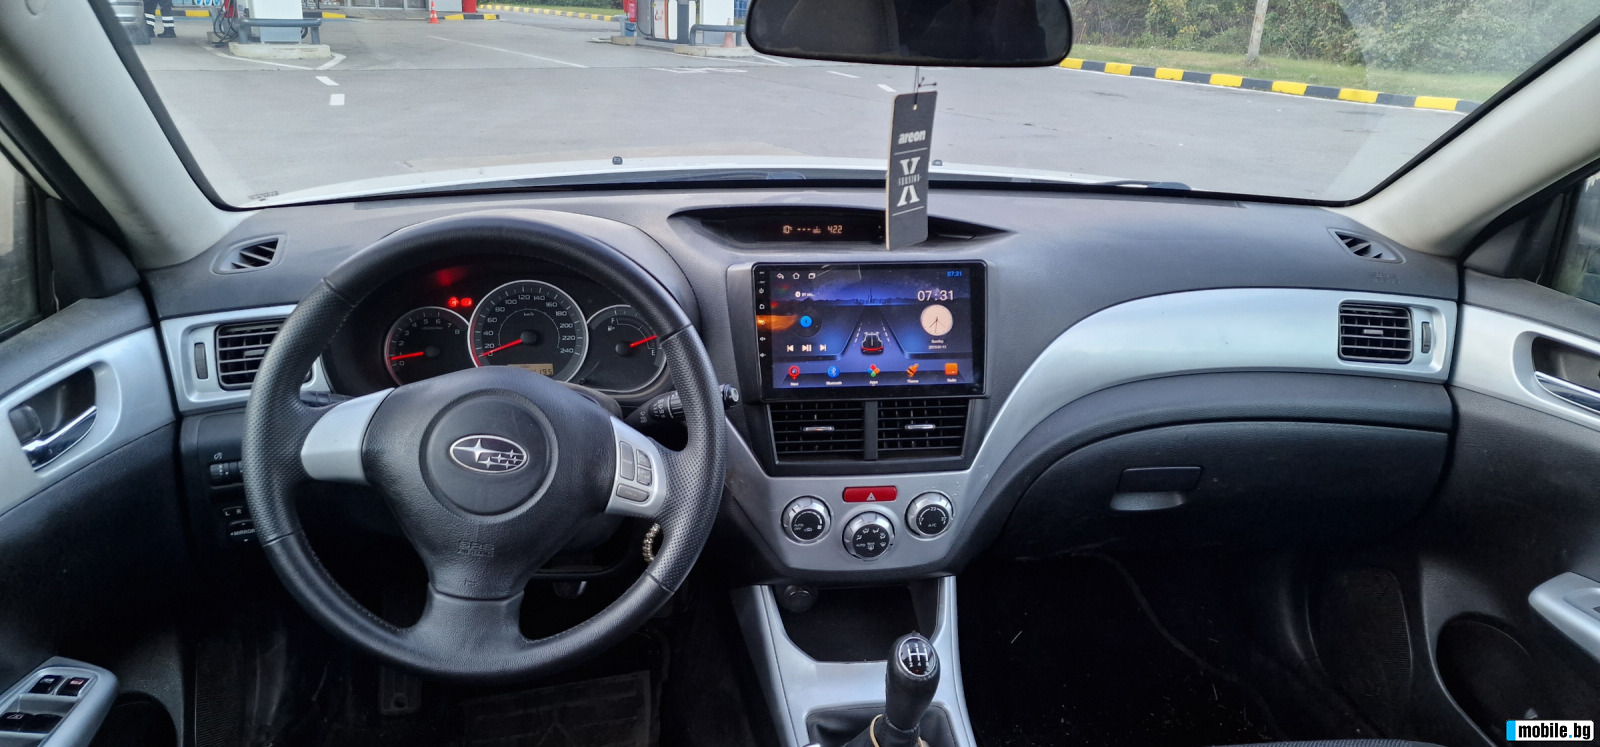 Subaru Impreza 2.0 GAZ/Benzin  | Mobile.bg   2